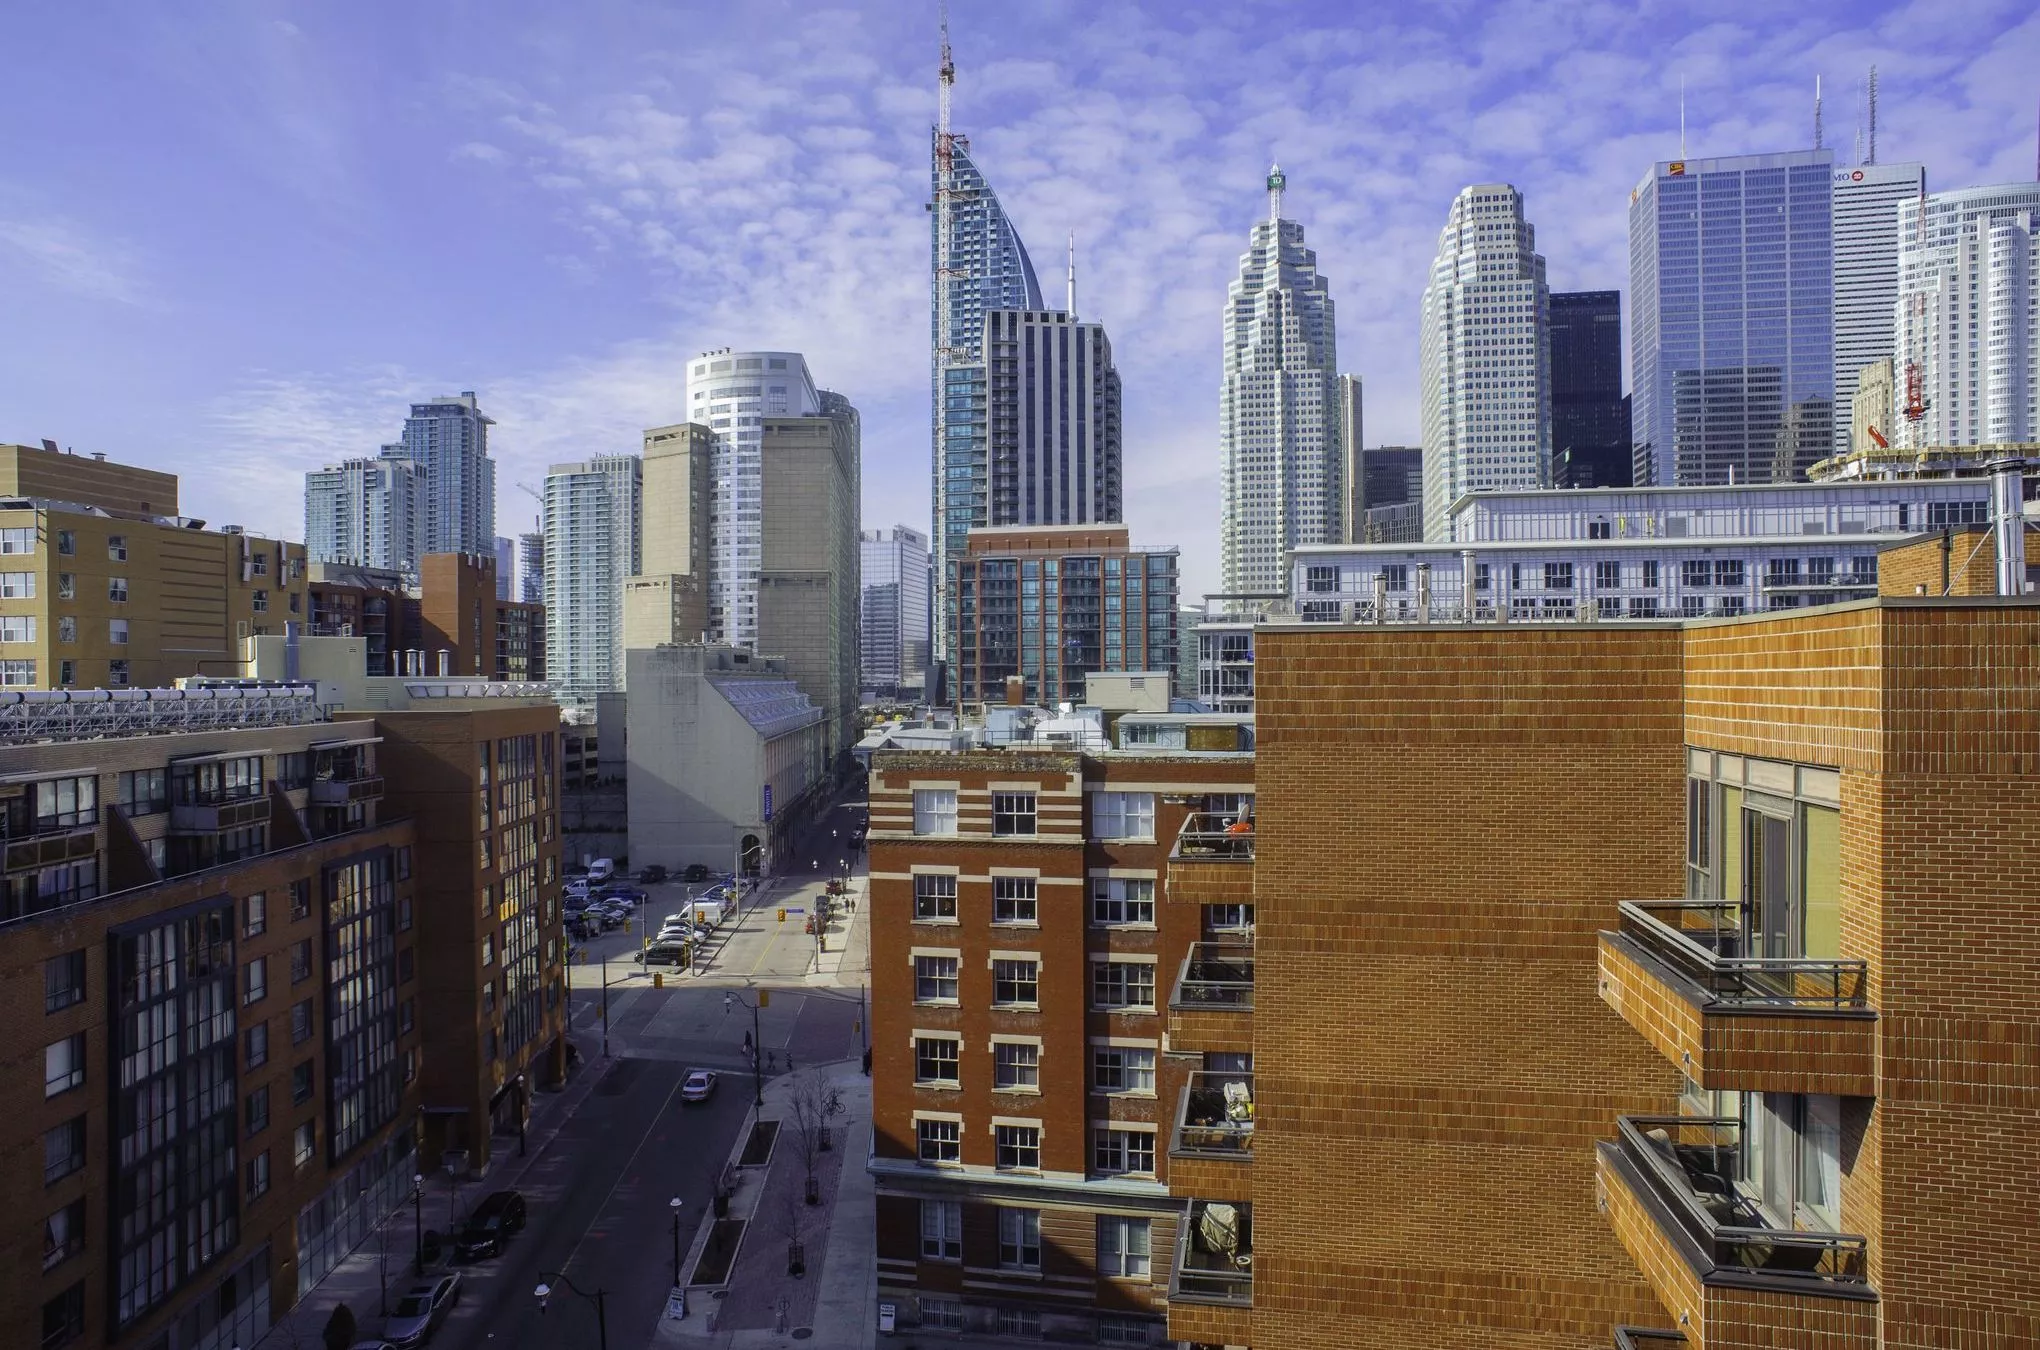 Blick auf die Skyline von Toronto mit dem Financial District